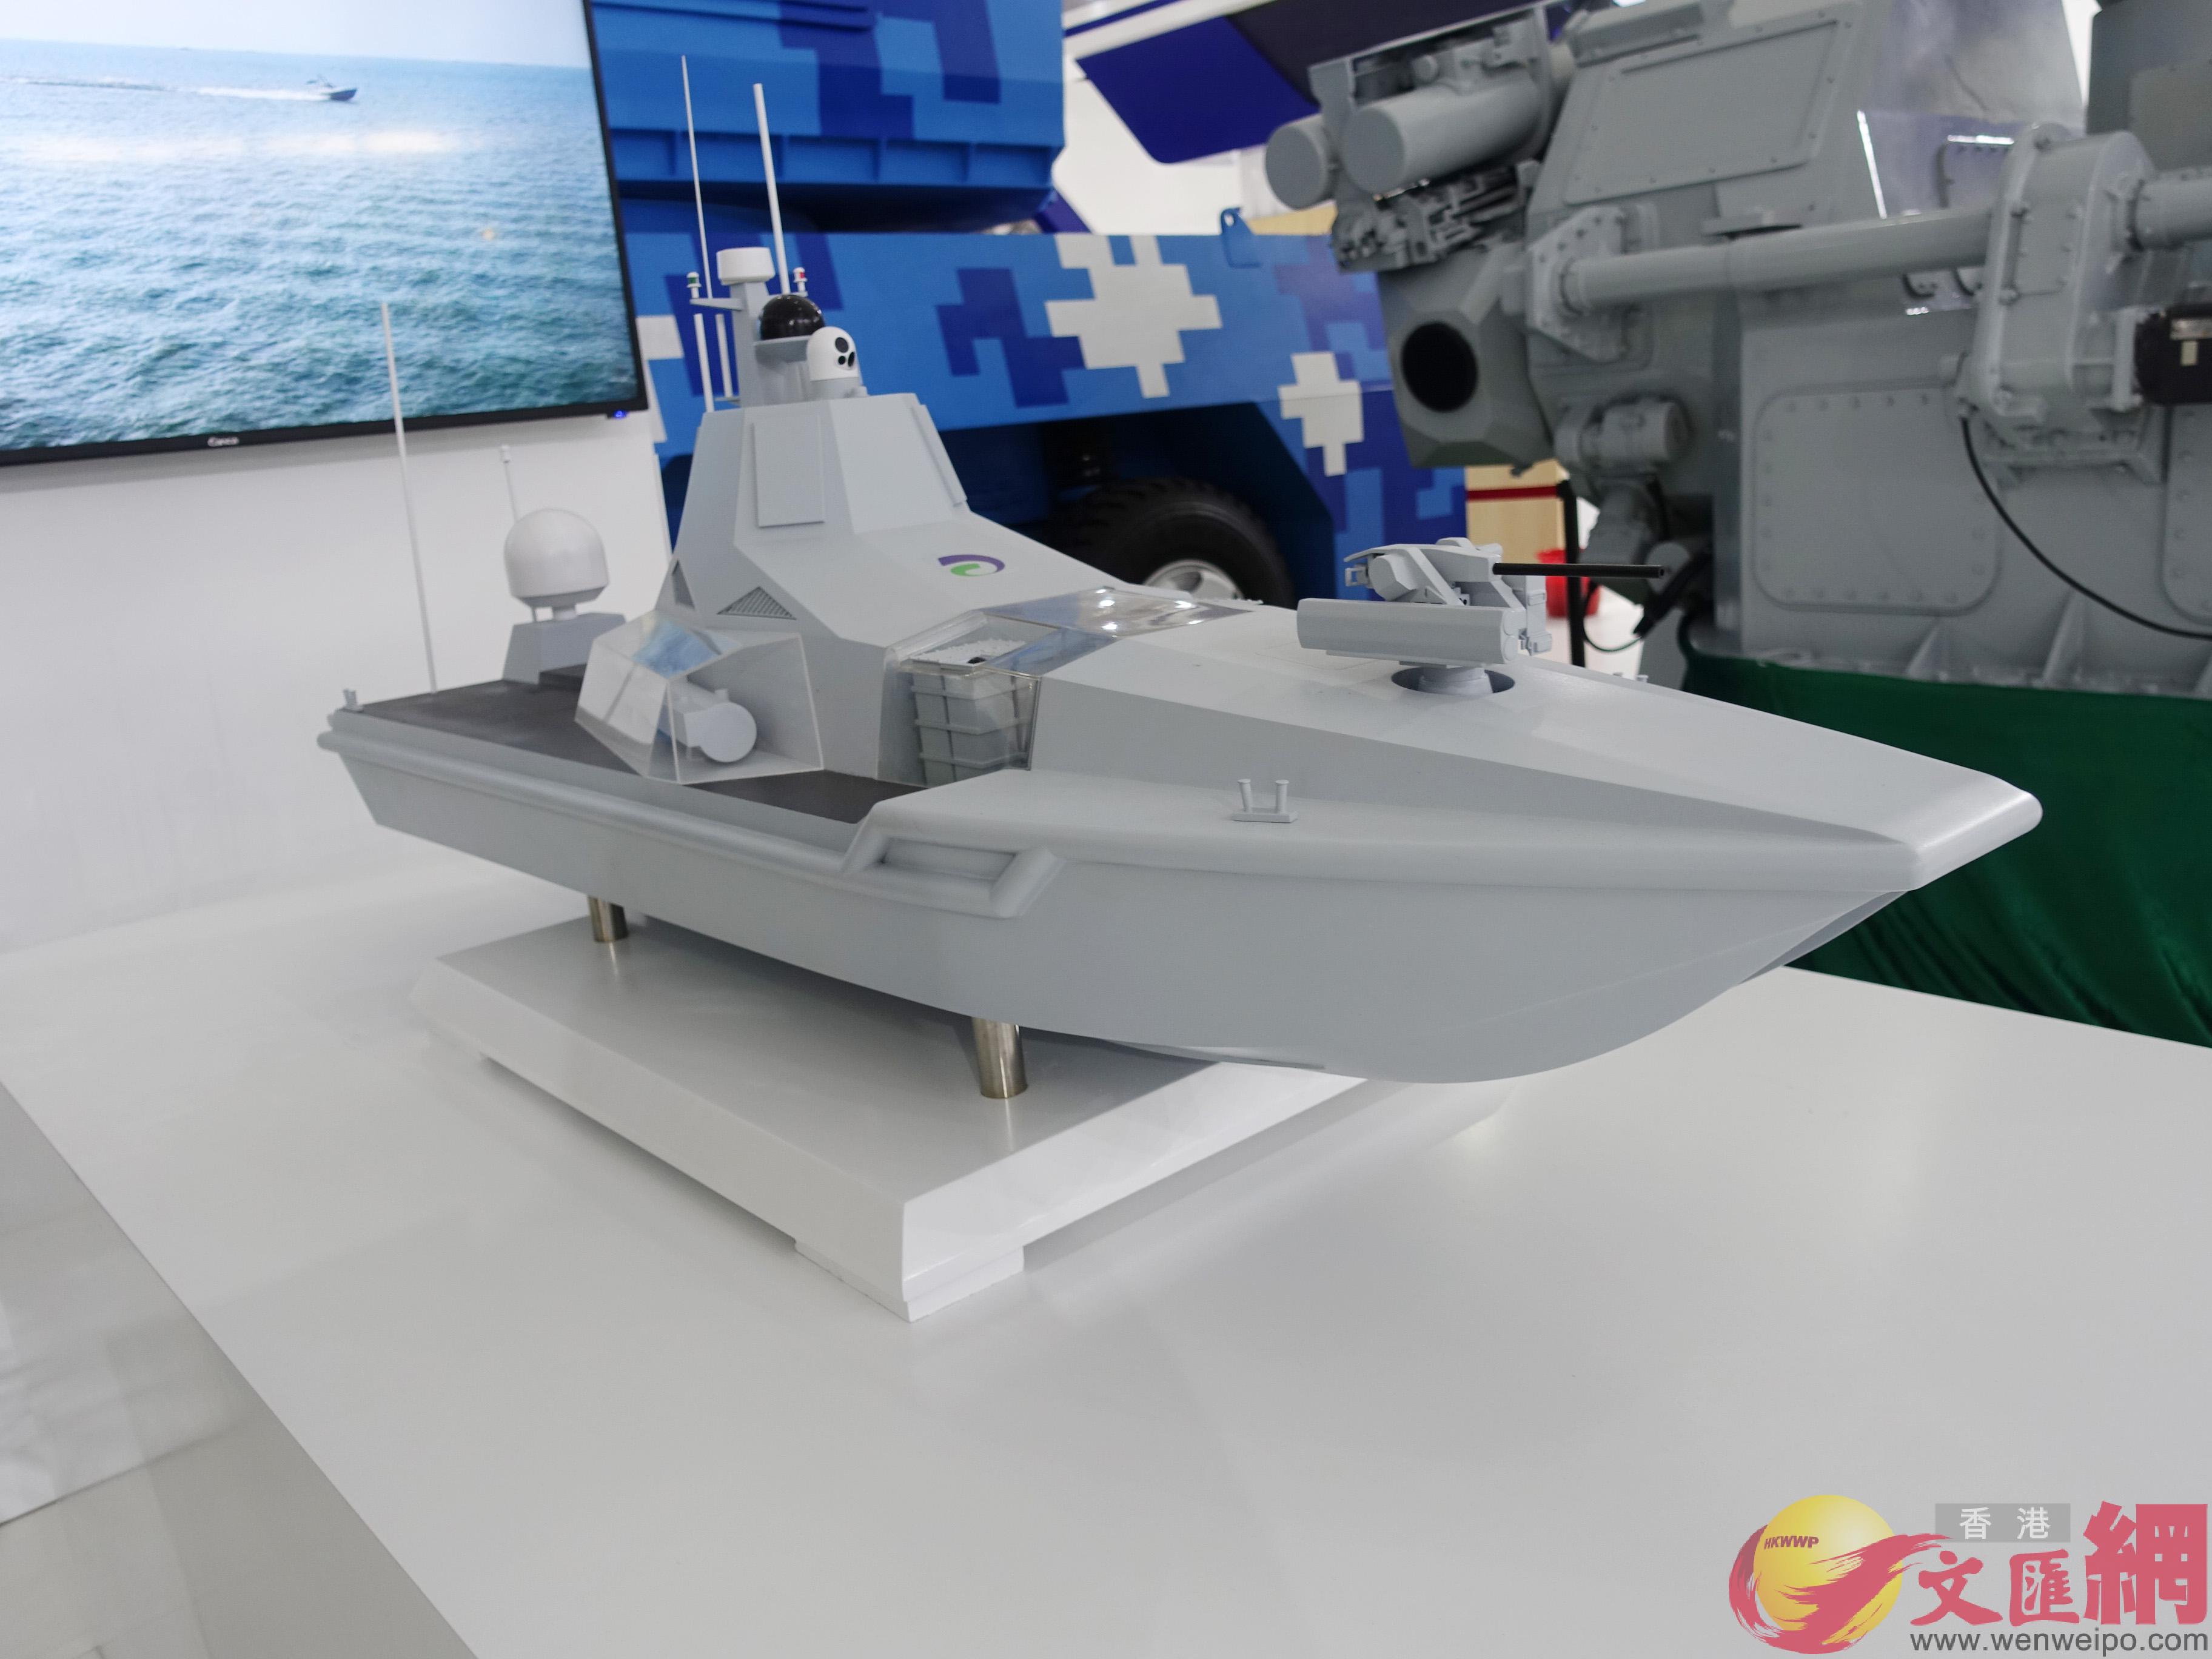 JARI-USV無人作戰艇A作為全球首創的無人導彈艇A或將開啟未來海戰新模式C]盧靜怡攝^